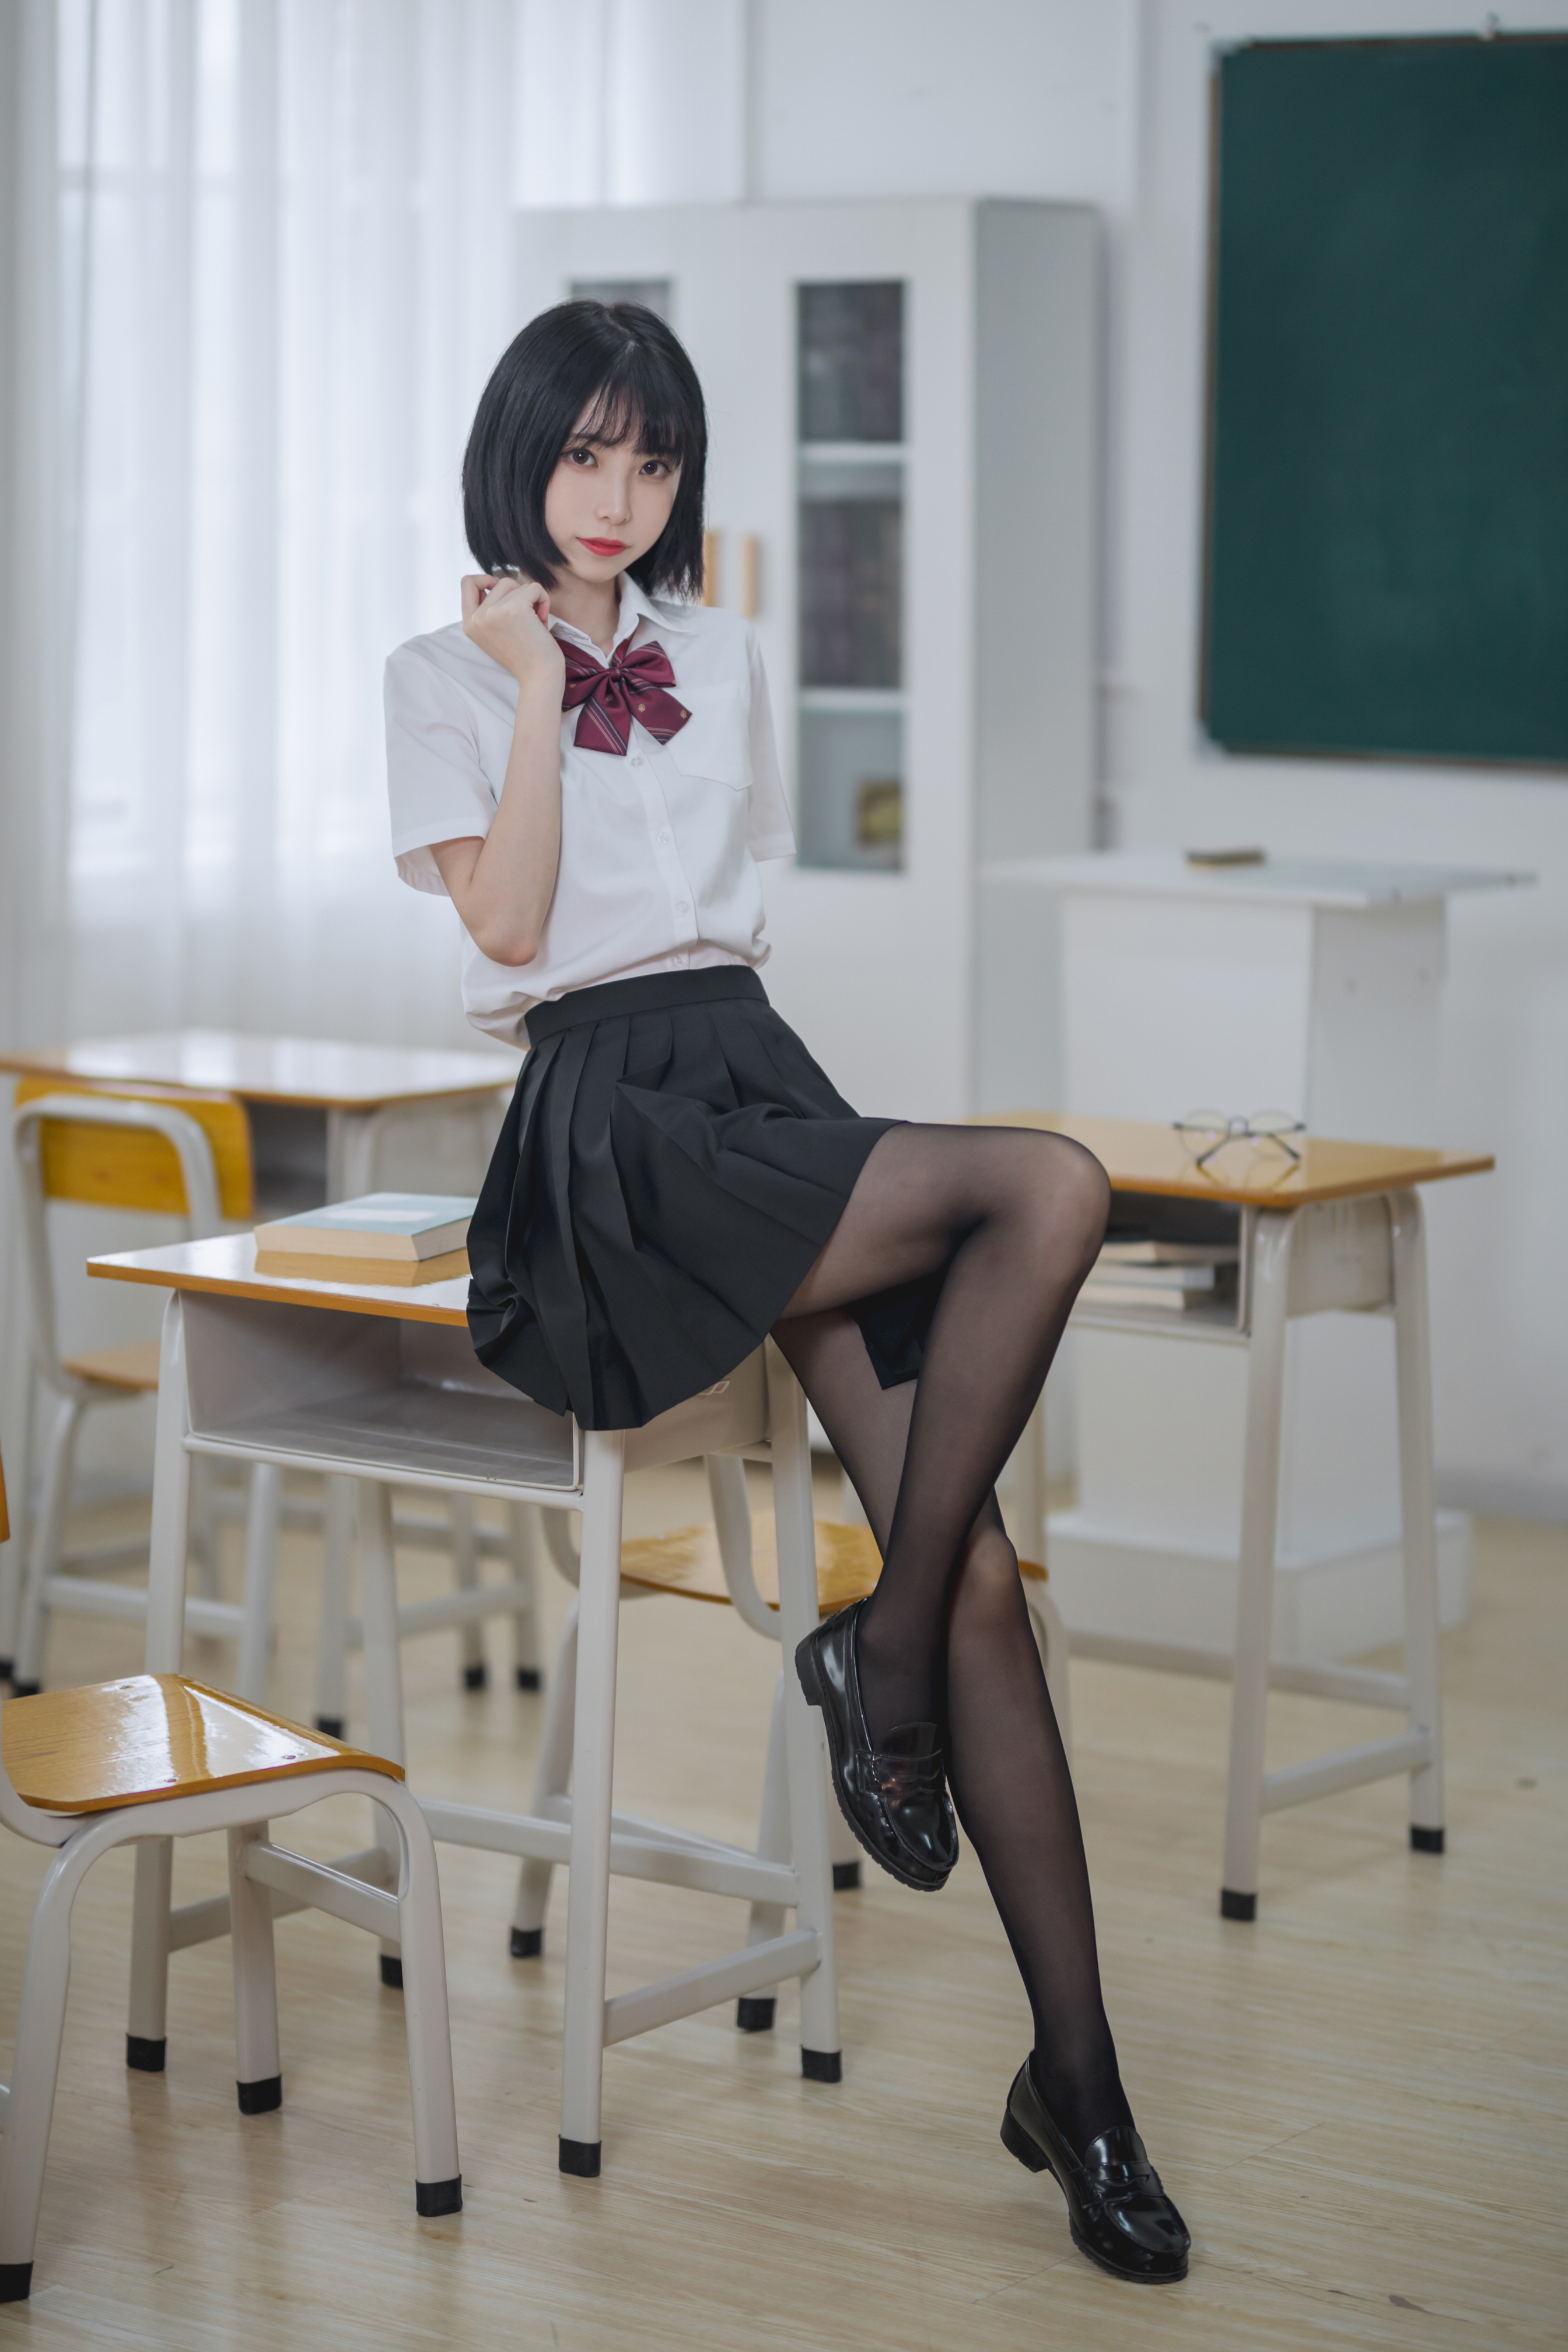 Xu Lan Women Model Asian Cosplay JK Schoolgirl Classroom School Uniform Women Indoors 2688x4032